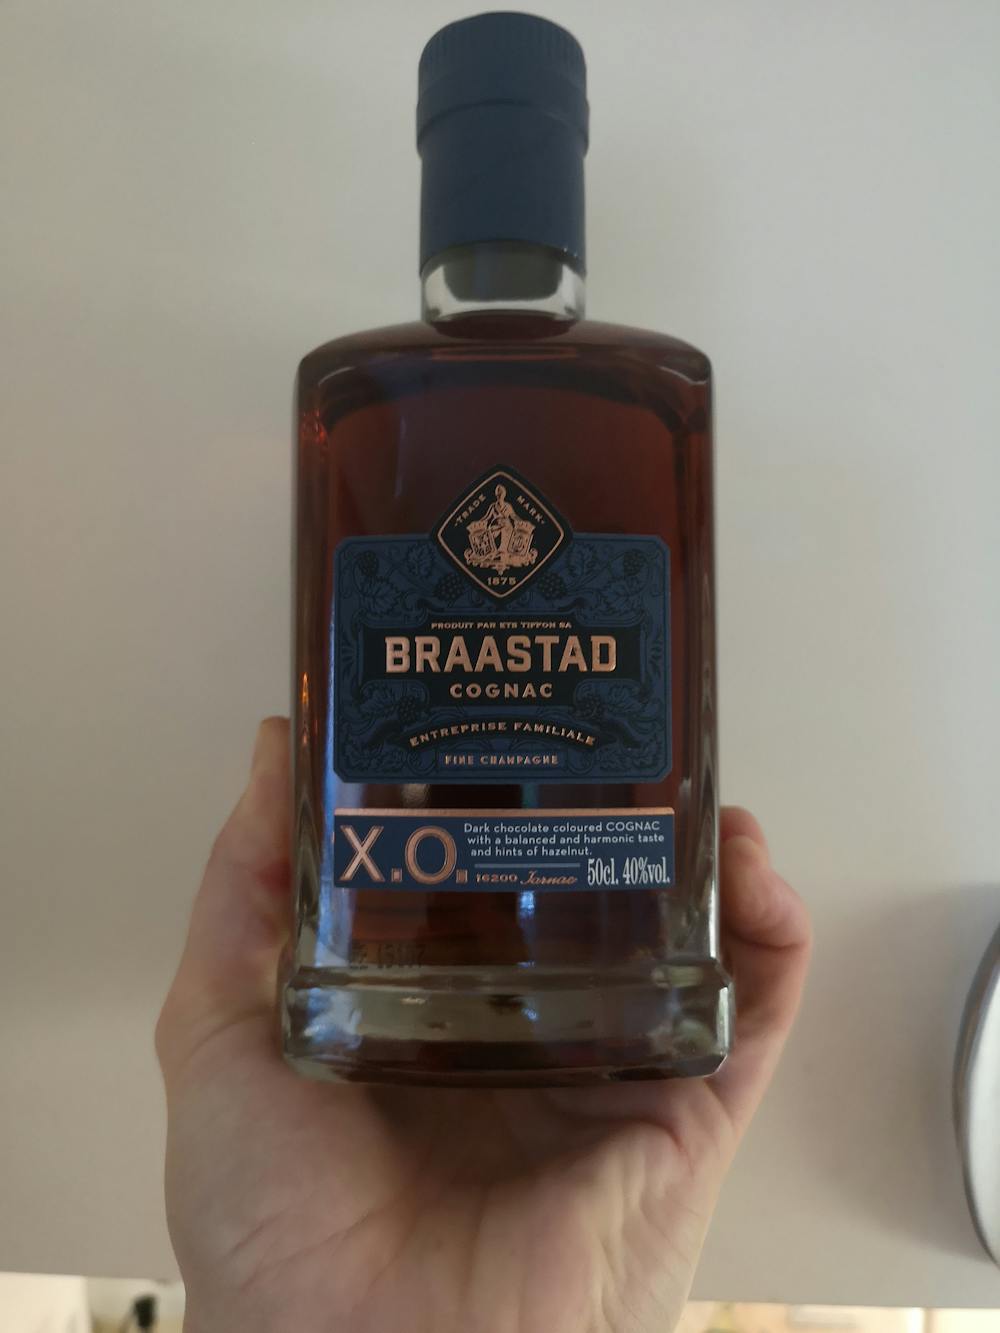 Braastad cognac, Trade mark